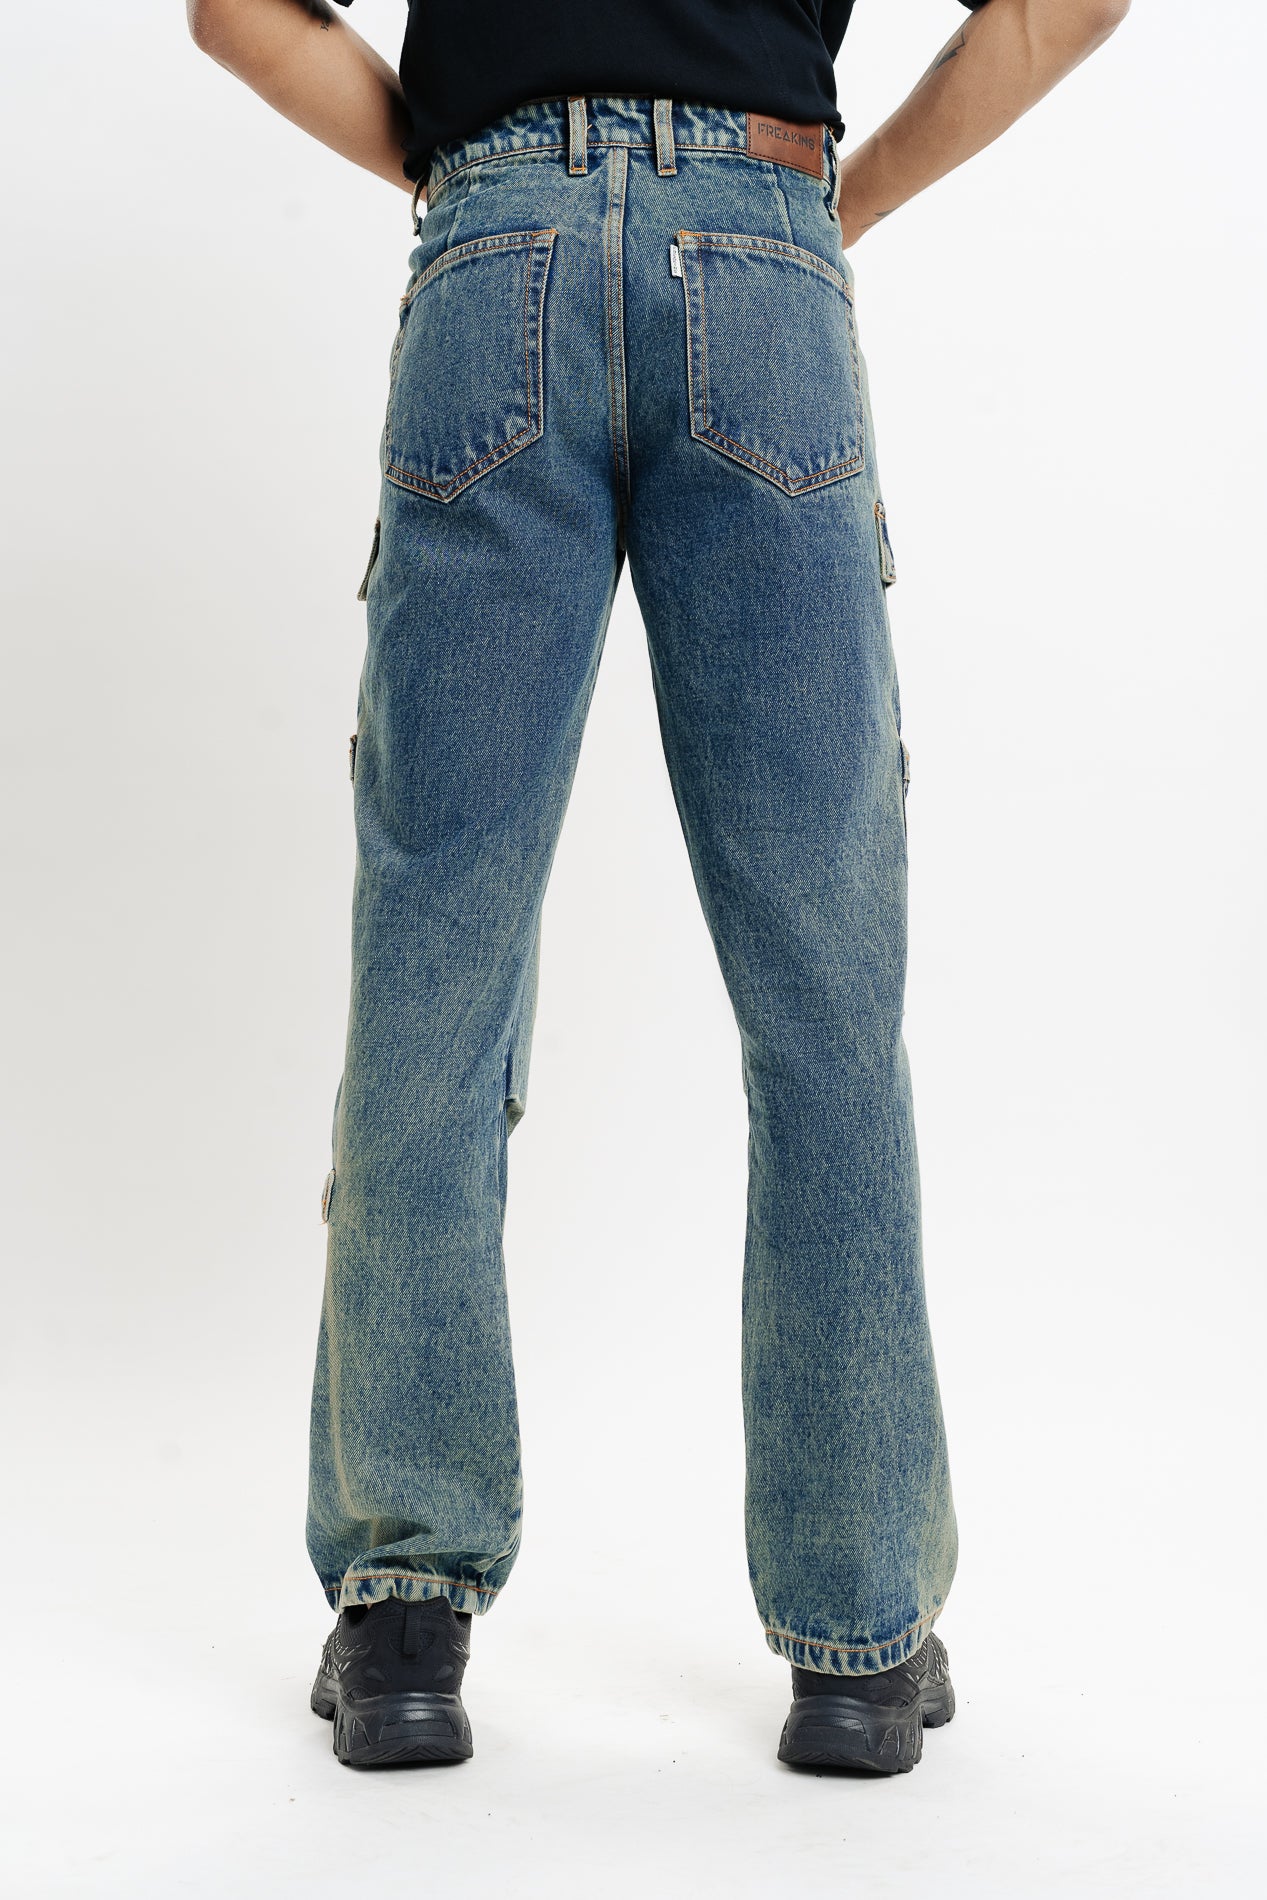 Men's Vintage Utility Cargo Jeans